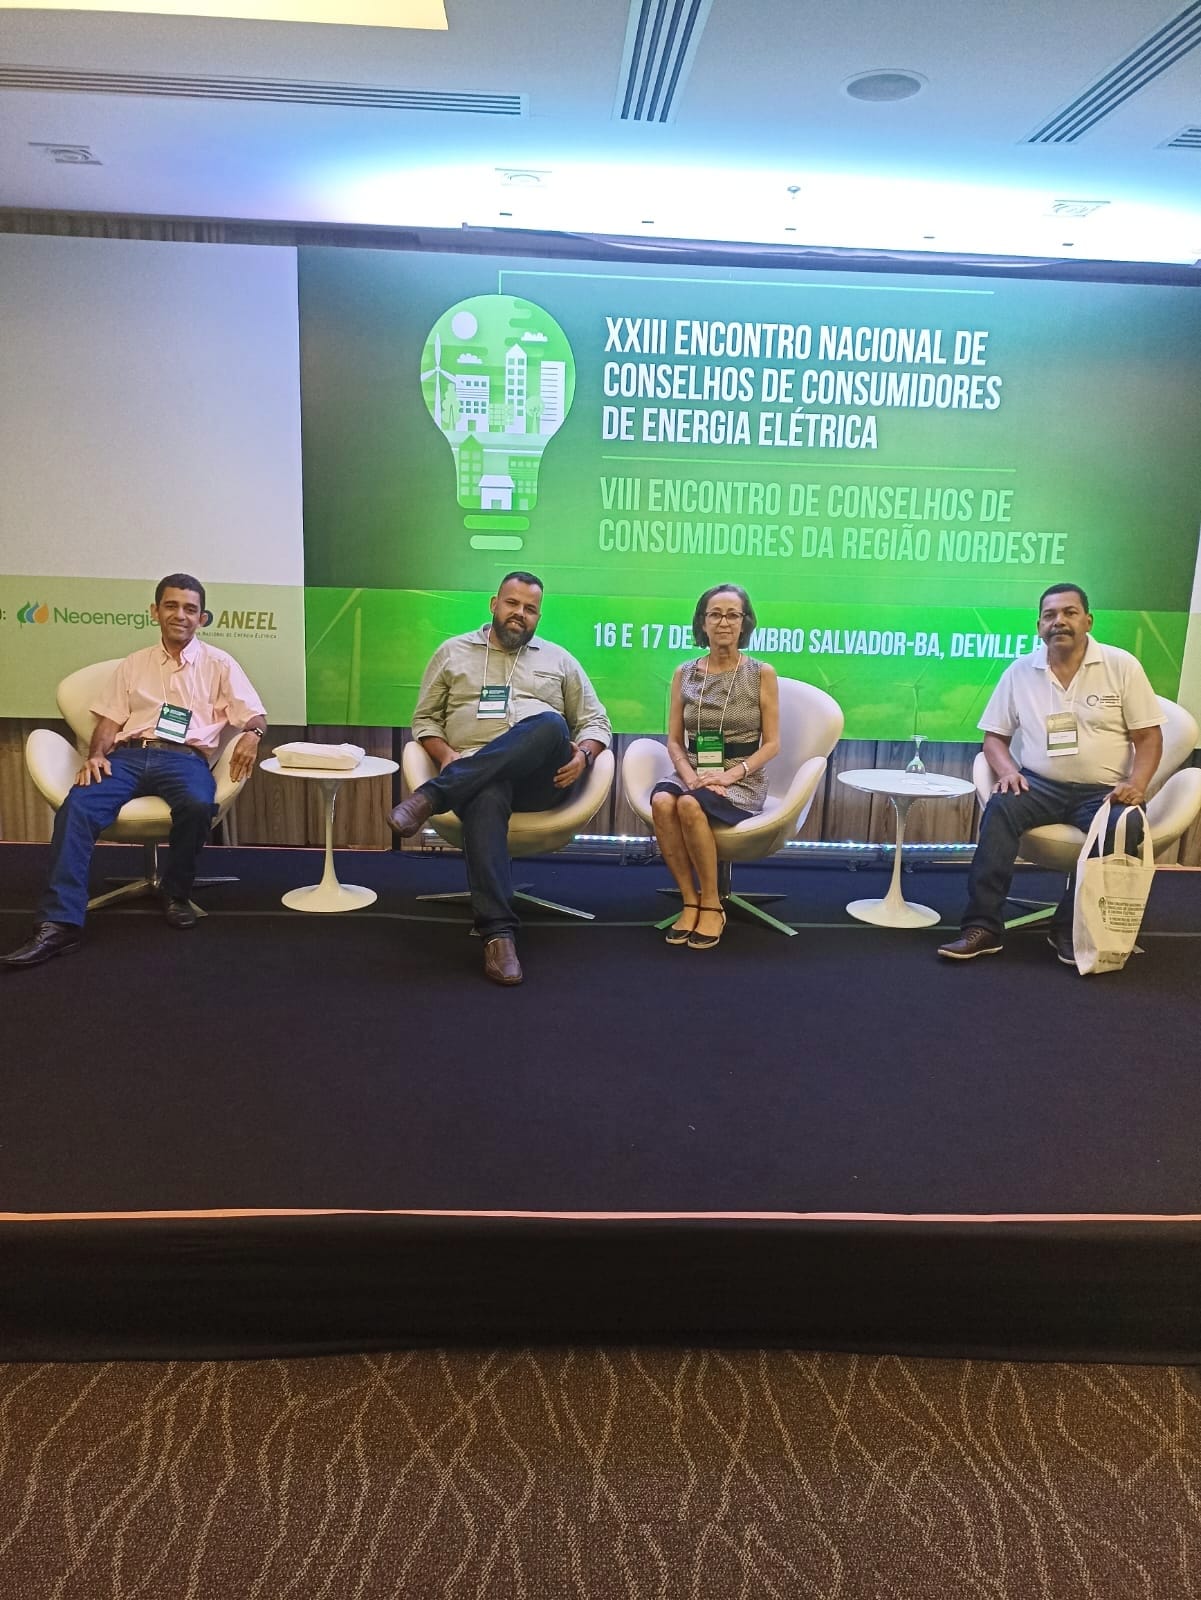 Conselho de Consumidores e Enel Distribuição Rio discutem avanços no  Noroeste Fluminense - Consumidores ENEL Rio